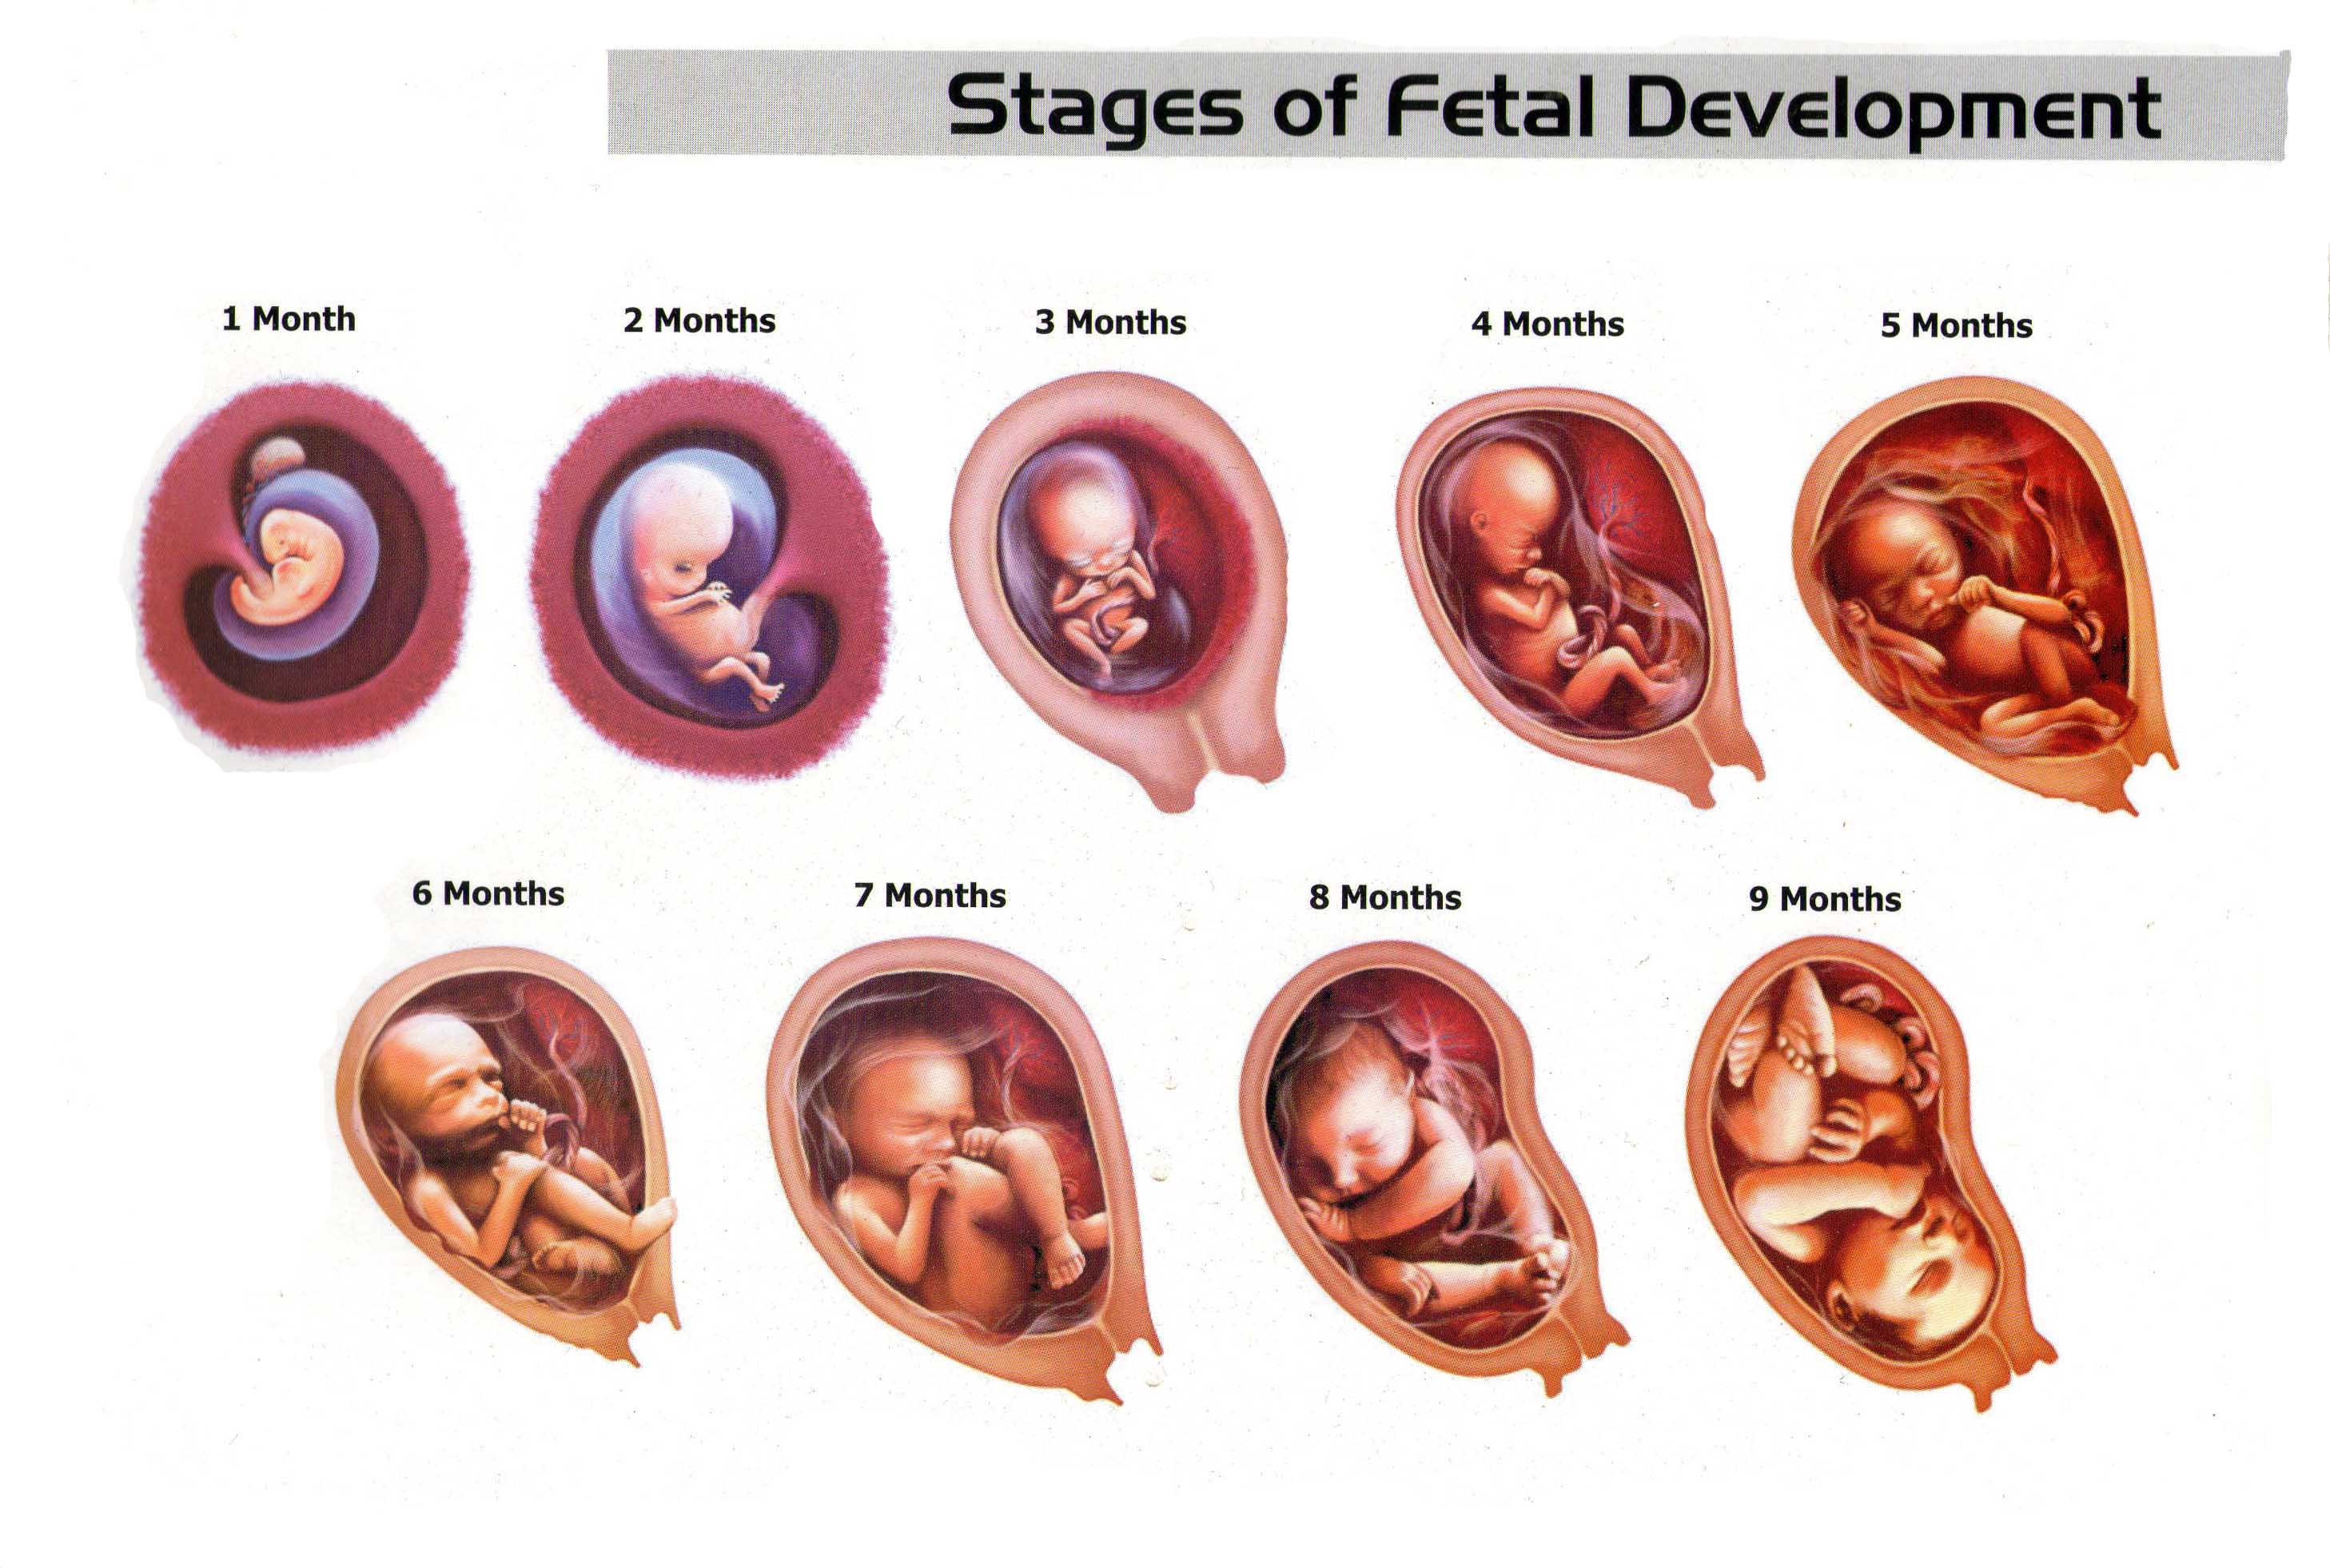 مراحل تكوين الجنين بالصور من اول يوم , صور مراحل تكوين الجنين وداع وفراق